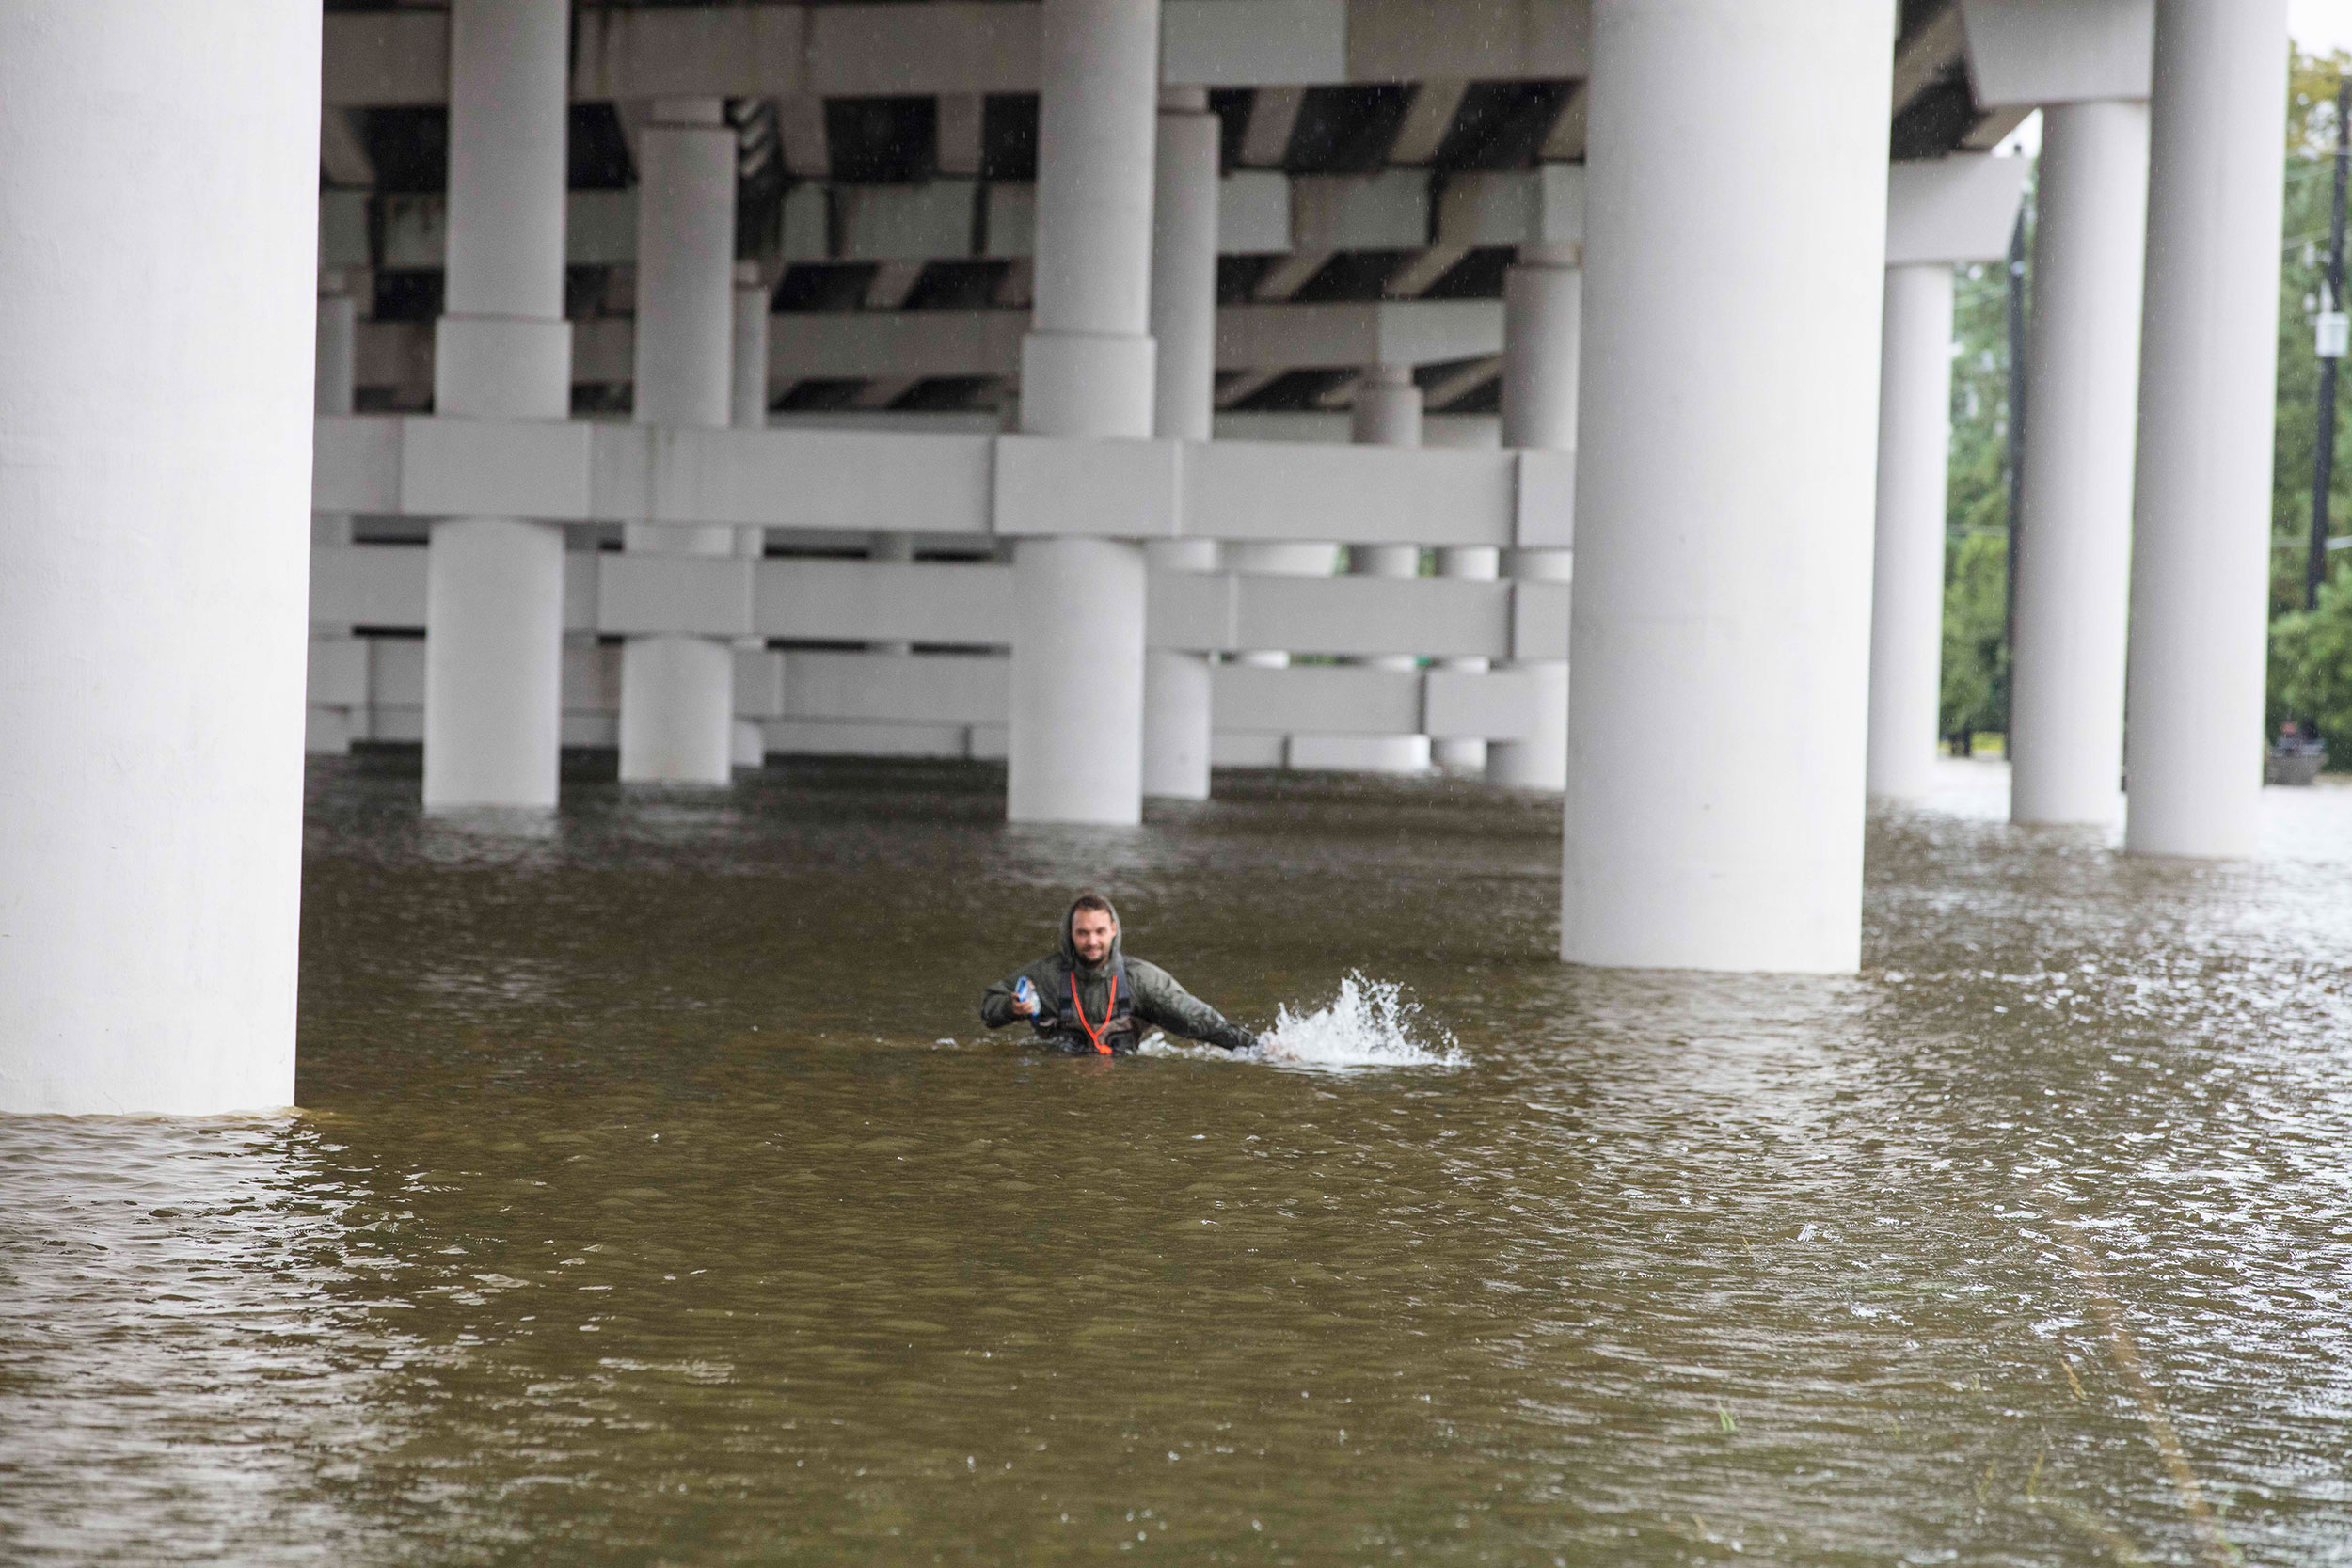 A man wading through chest-high water under an overpass.